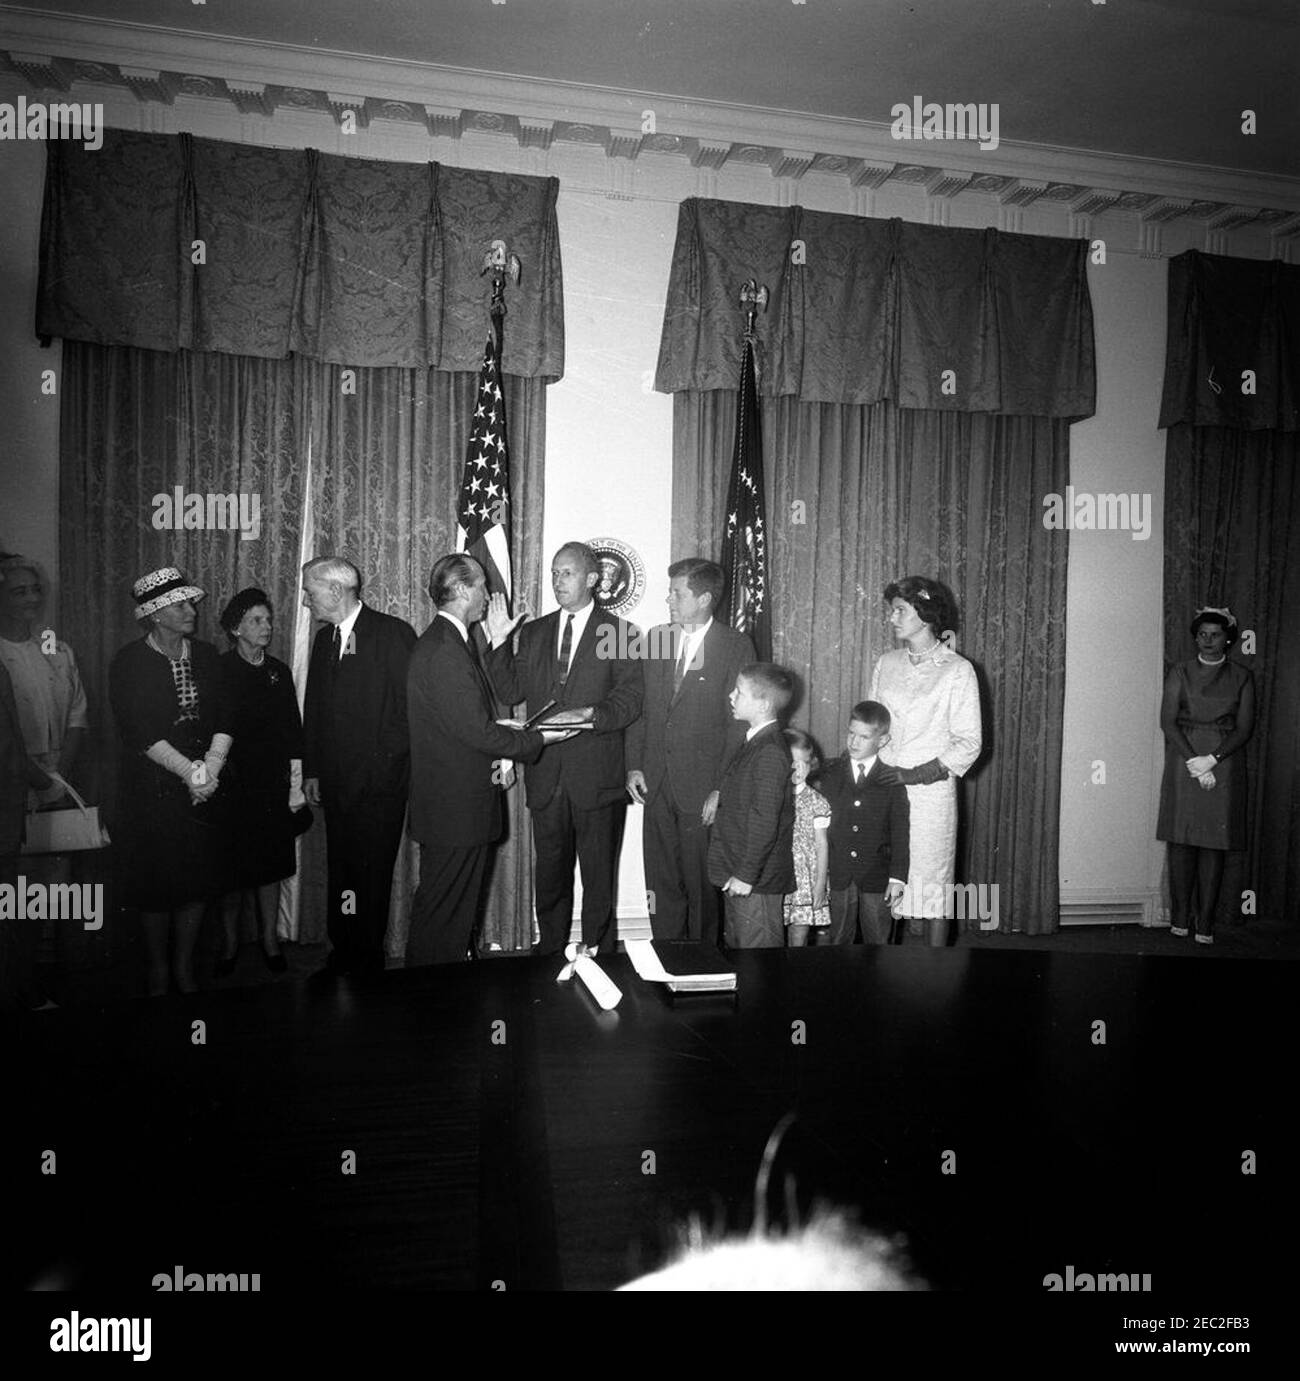 Jurando en la ceremonia, William Battle, Embajador de EE.UU. En Australia, 5:14PM. Ceremonia de juramento del Embajador de los Estados Unidos en Australia, William C. Battle. El Presidente John F. Kennedy mira como Jefe de Protocolo, Angier Biddle Duke (centro izquierda), administra el juramento al Sr. Battle (centro); el ex Gobernador de Virginia, John S. Battle, está a la izquierda del Sr. Duke. También en la foto (a la derecha del Presidente Kennedy): W. Cullen Battle, Jr.; Janie Battle; Robert W. Battle; Barry Webb Battle. Sala del Gabinete, Casa Blanca, Washington, D.C. [fotografía de Harold Sellers] Foto de stock